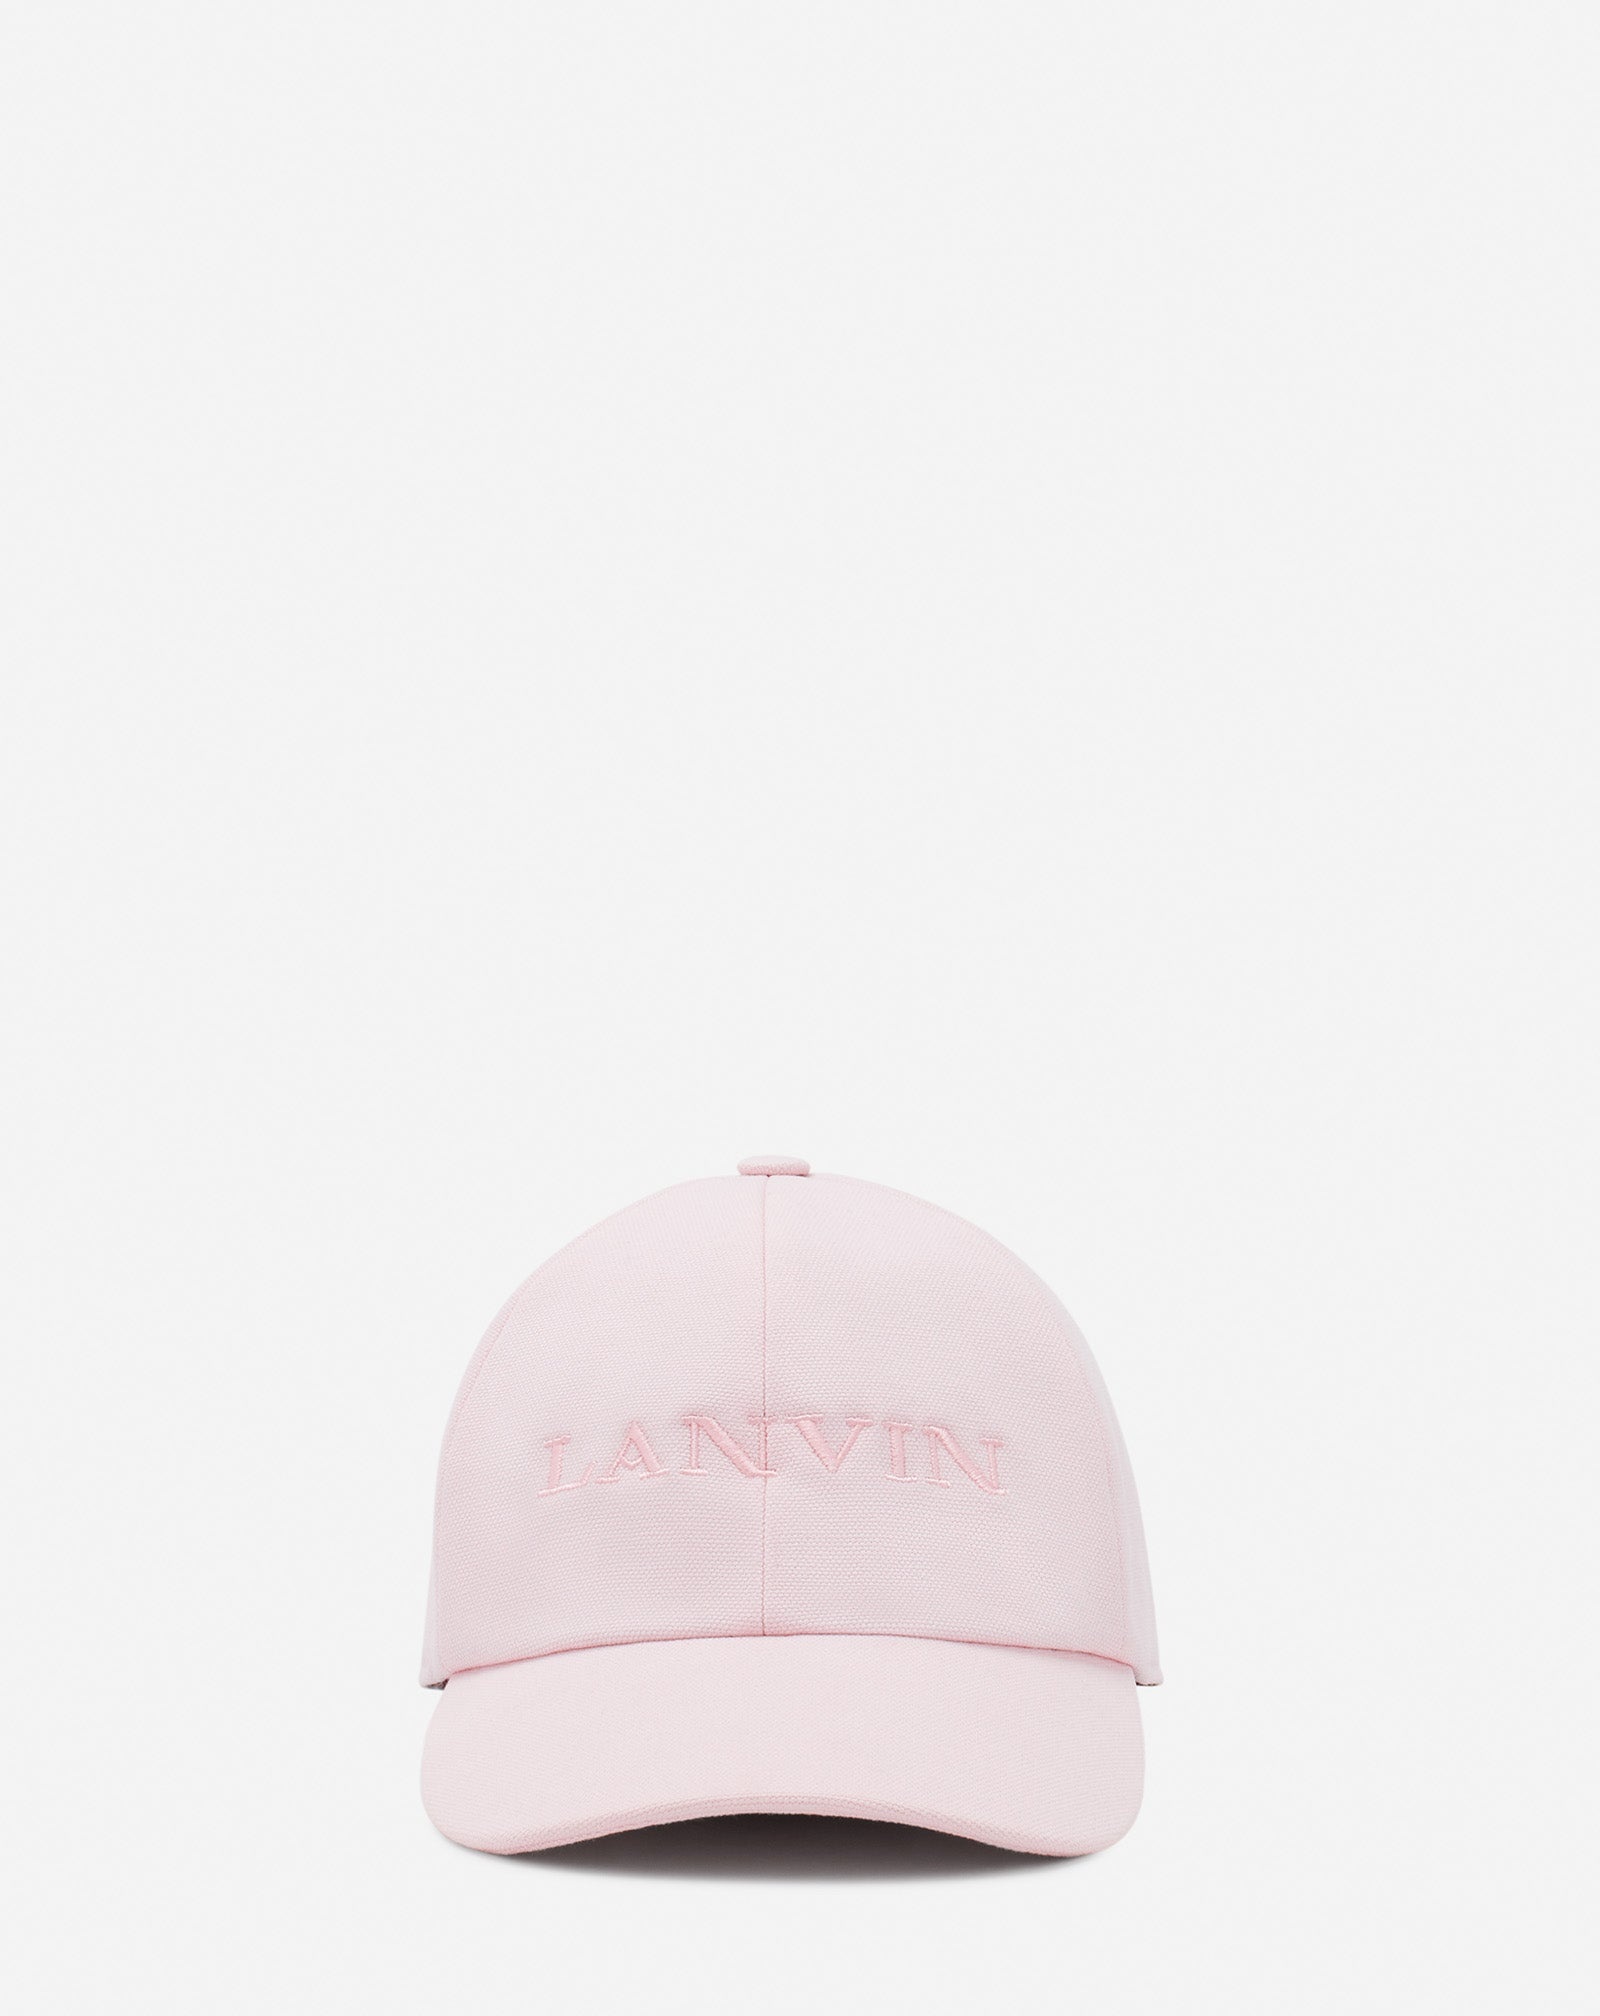 LANVIN COTTON CAP - 1